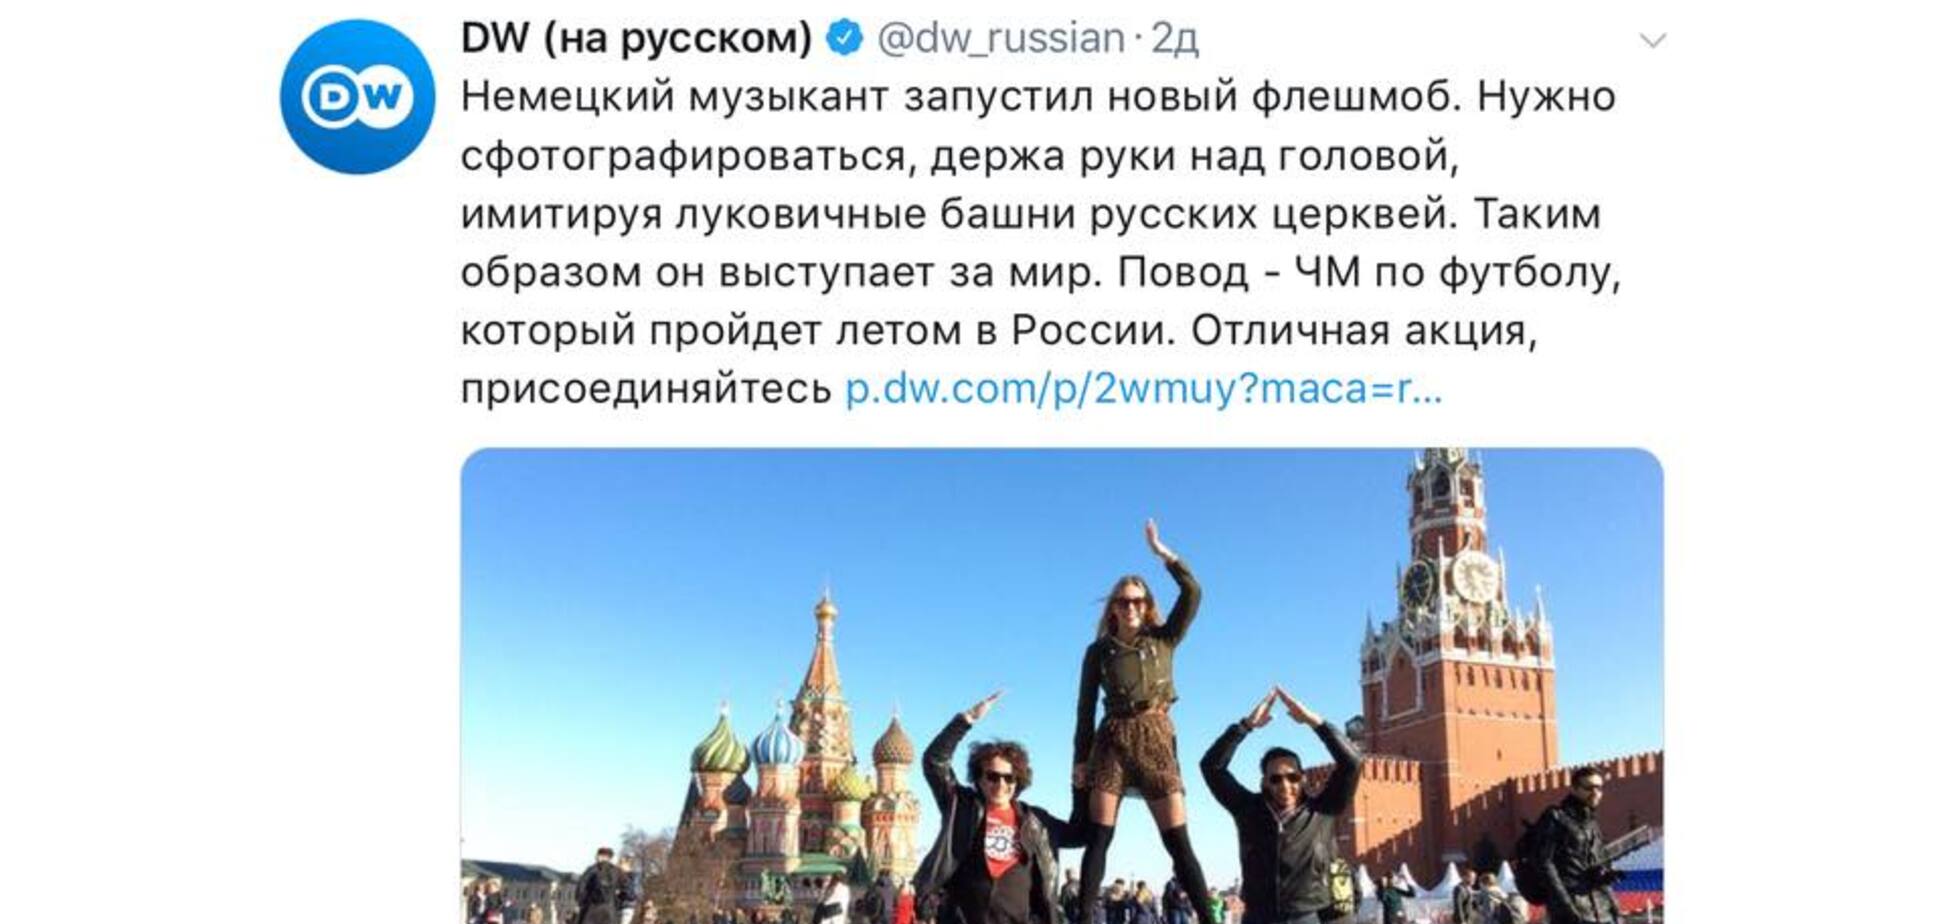 'Давайте имитировать башни русских церквей': украинцев возмутил флешмоб журналистов